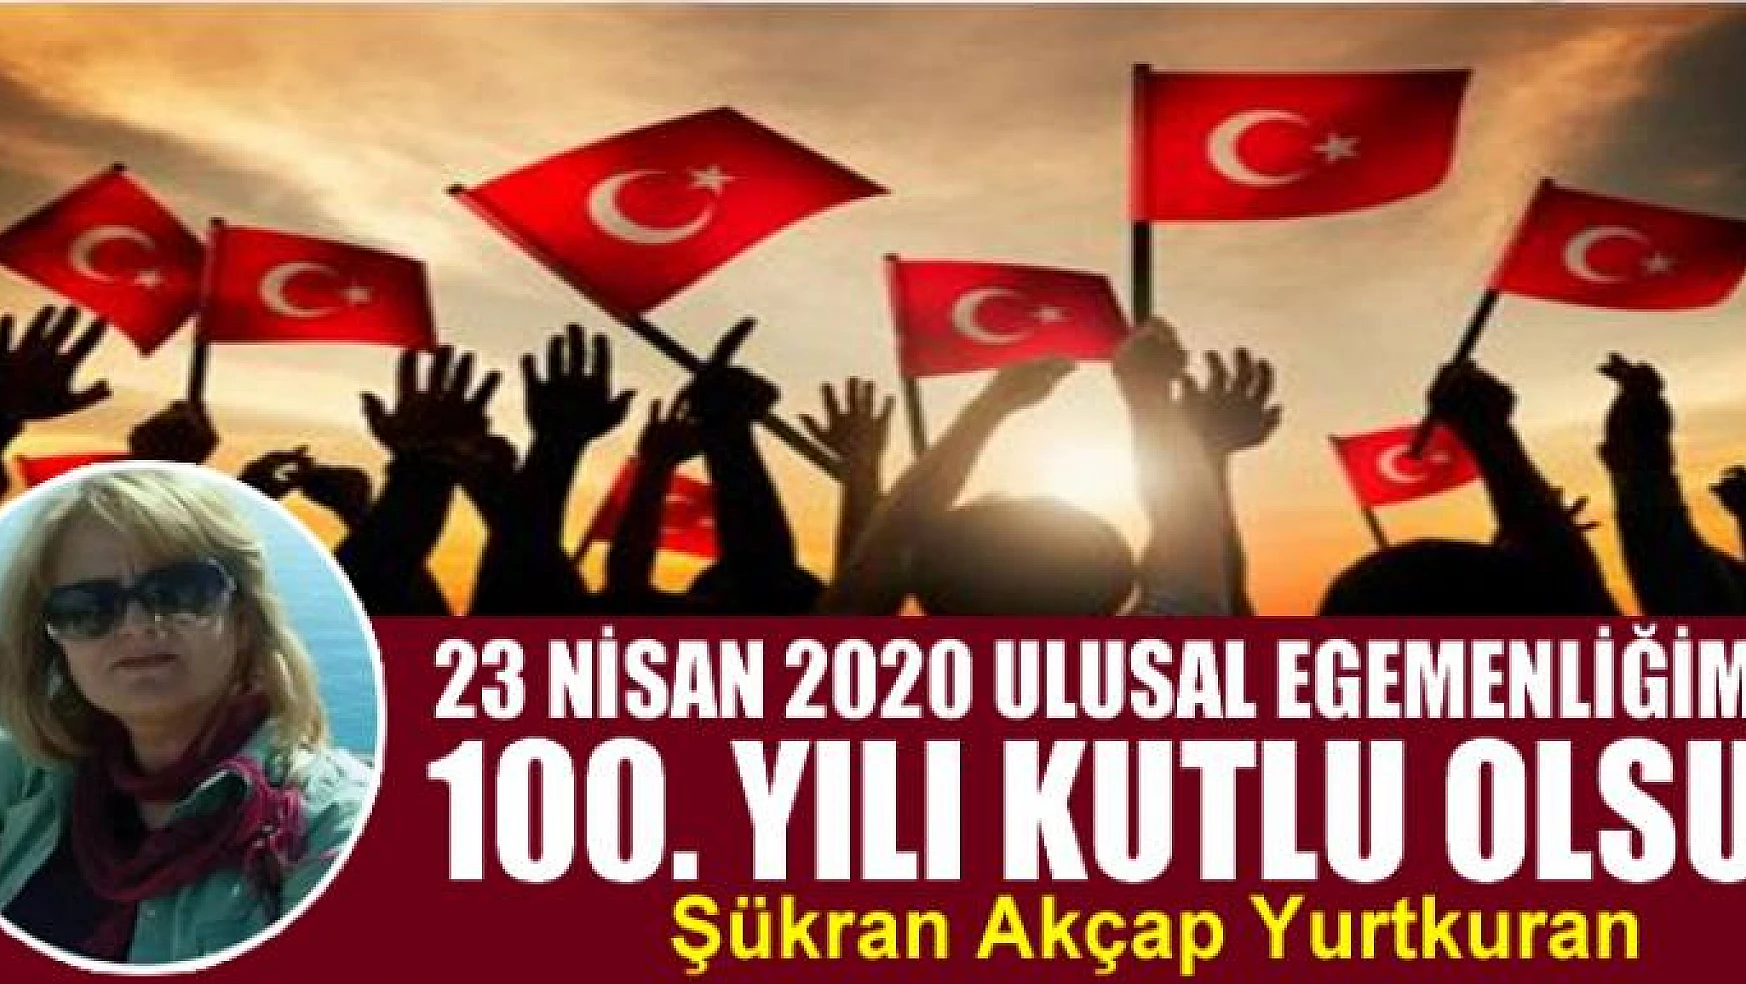 23 Nisan 2020 Ulusal Egemenliğimizin 100. Yılı Kutlu Olsun!